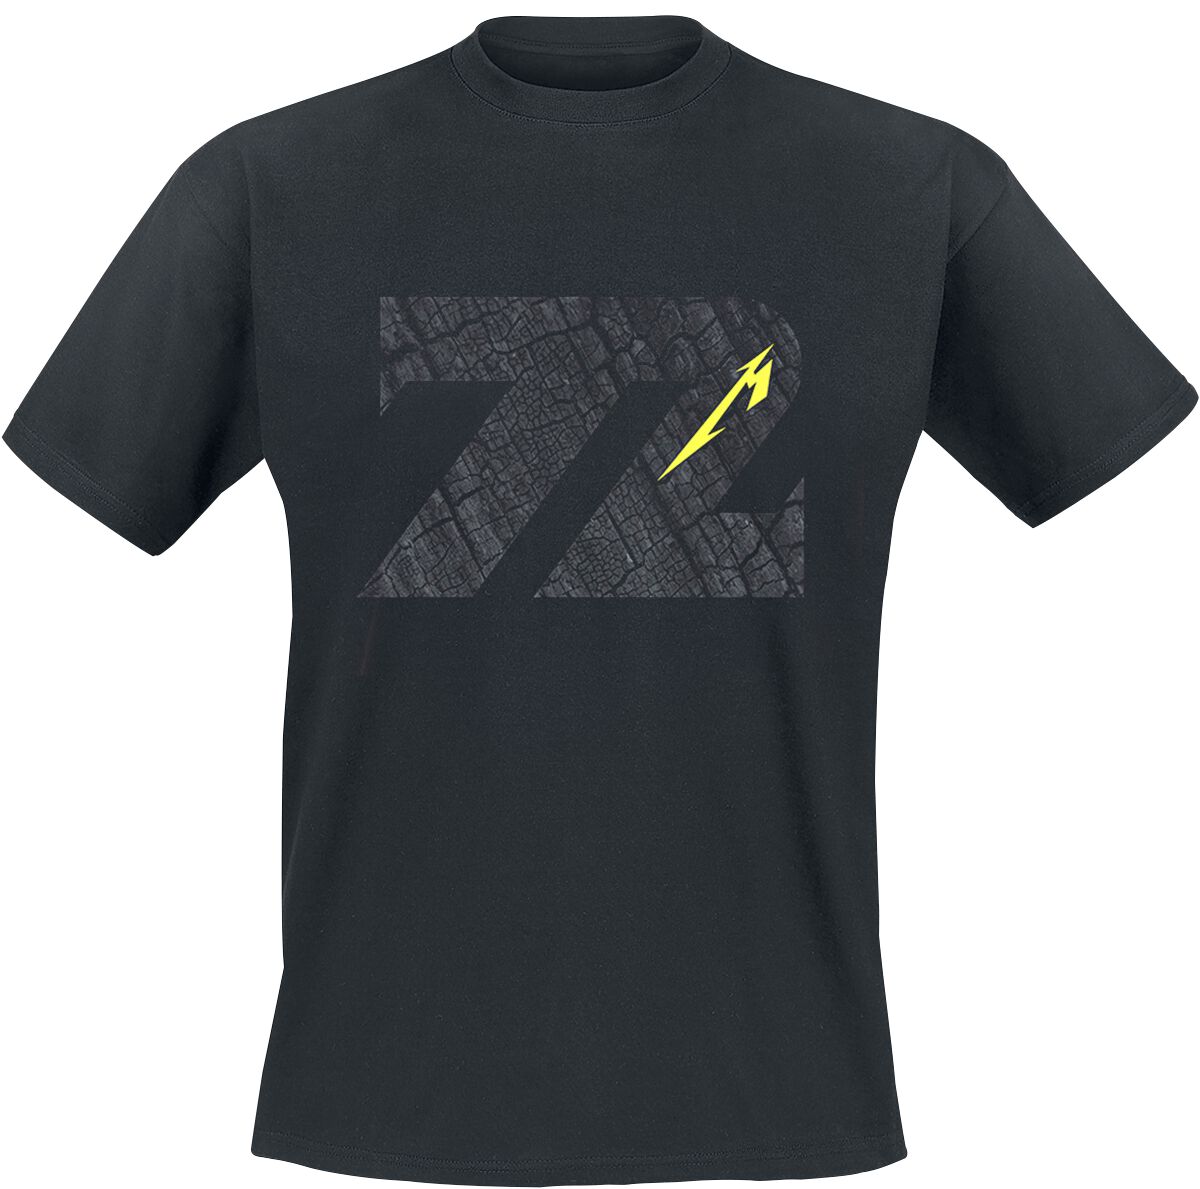 Metallica T-Shirt - Charred 72 (M72) - S bis 5XL - für Männer - Größe XL - schwarz  - Lizenziertes Merchandise!